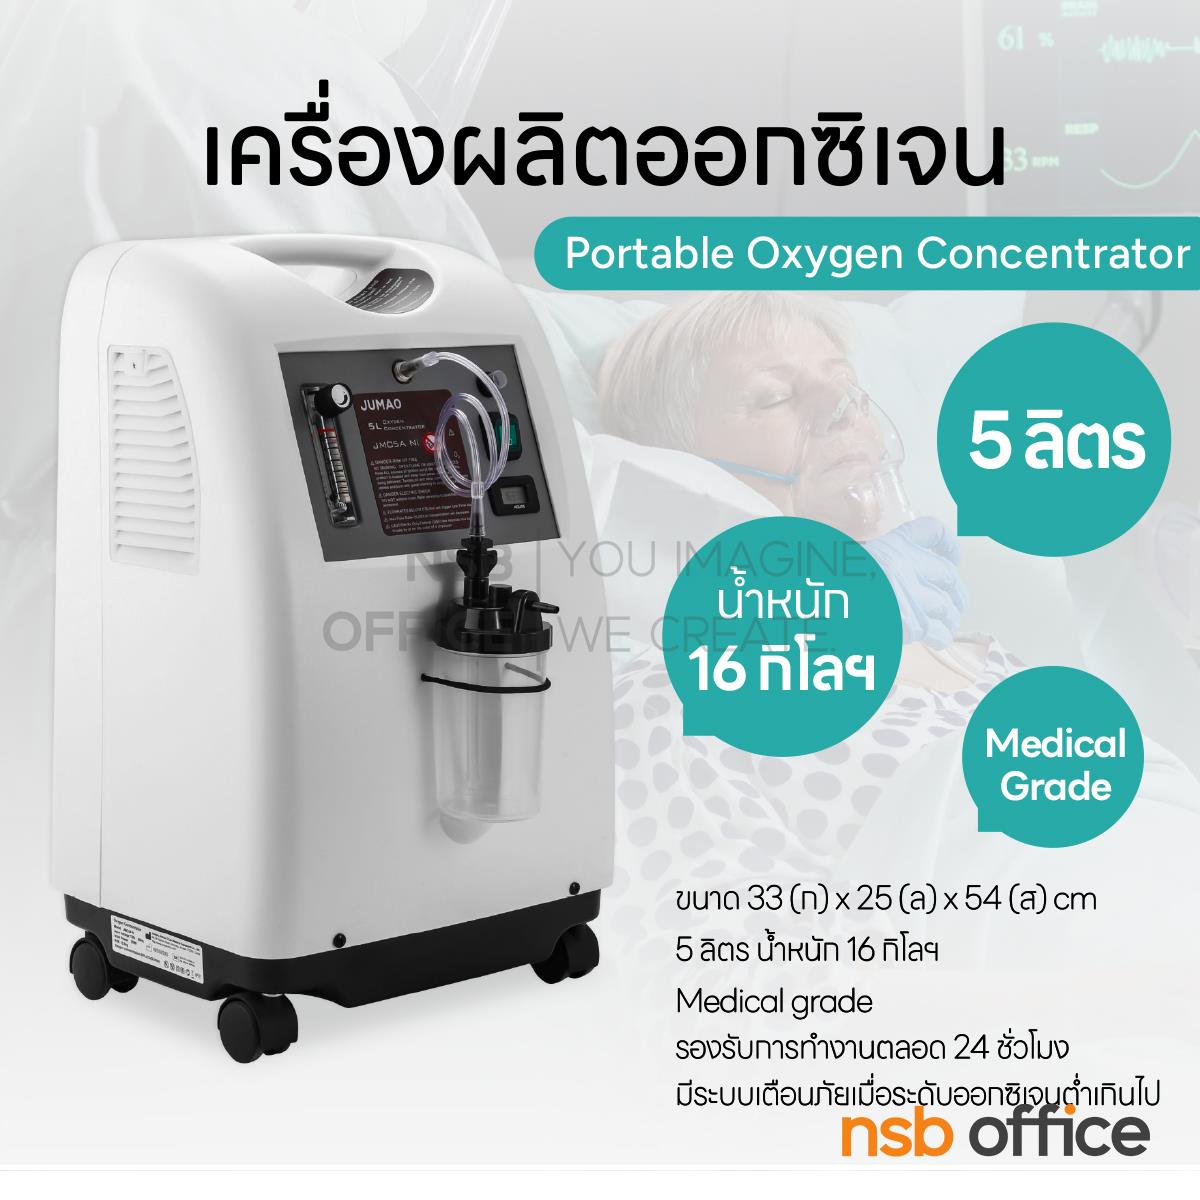 เครื่องผลิตออกซิเจน Portable Oxygen Concentrator ขนาด 5 ลิตร  ล้อเลื่อน